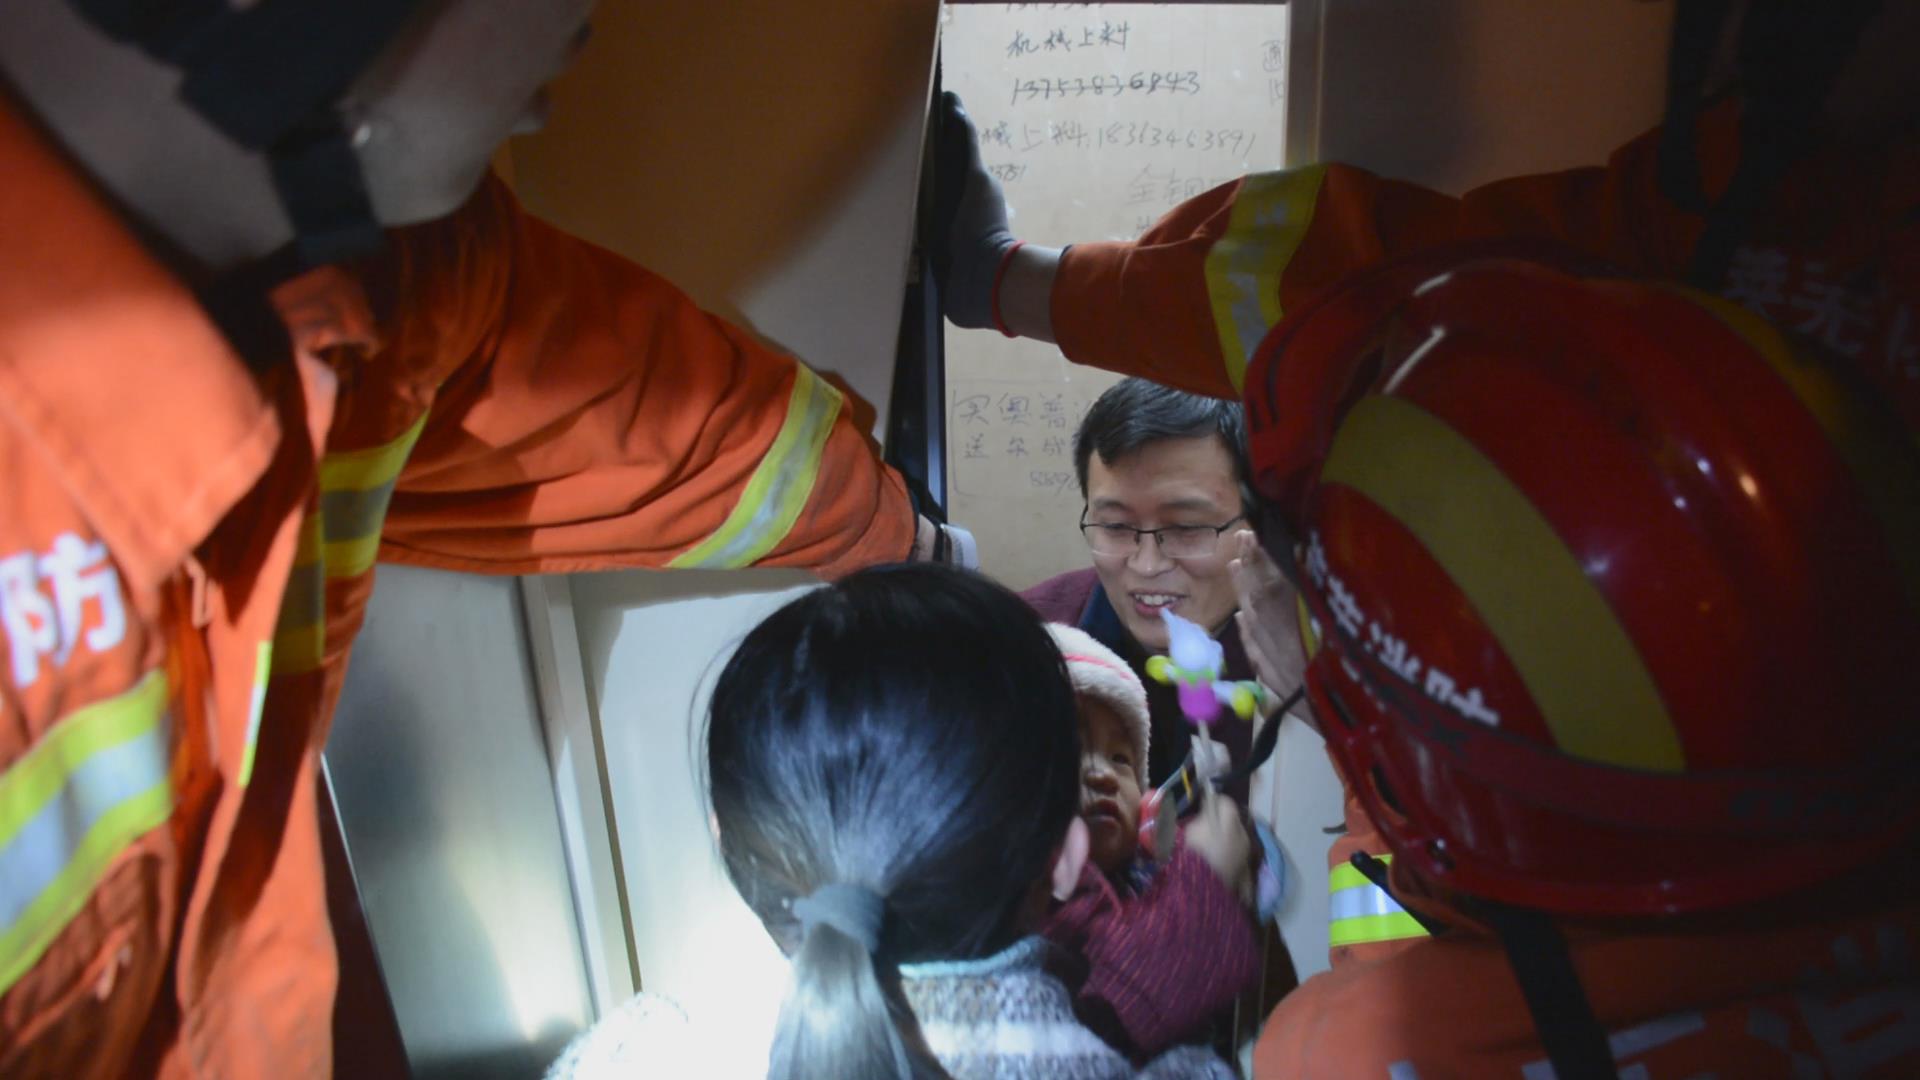 莱芜一小区电梯故障4人被困  消防官兵肩膀搭梯3分钟营救